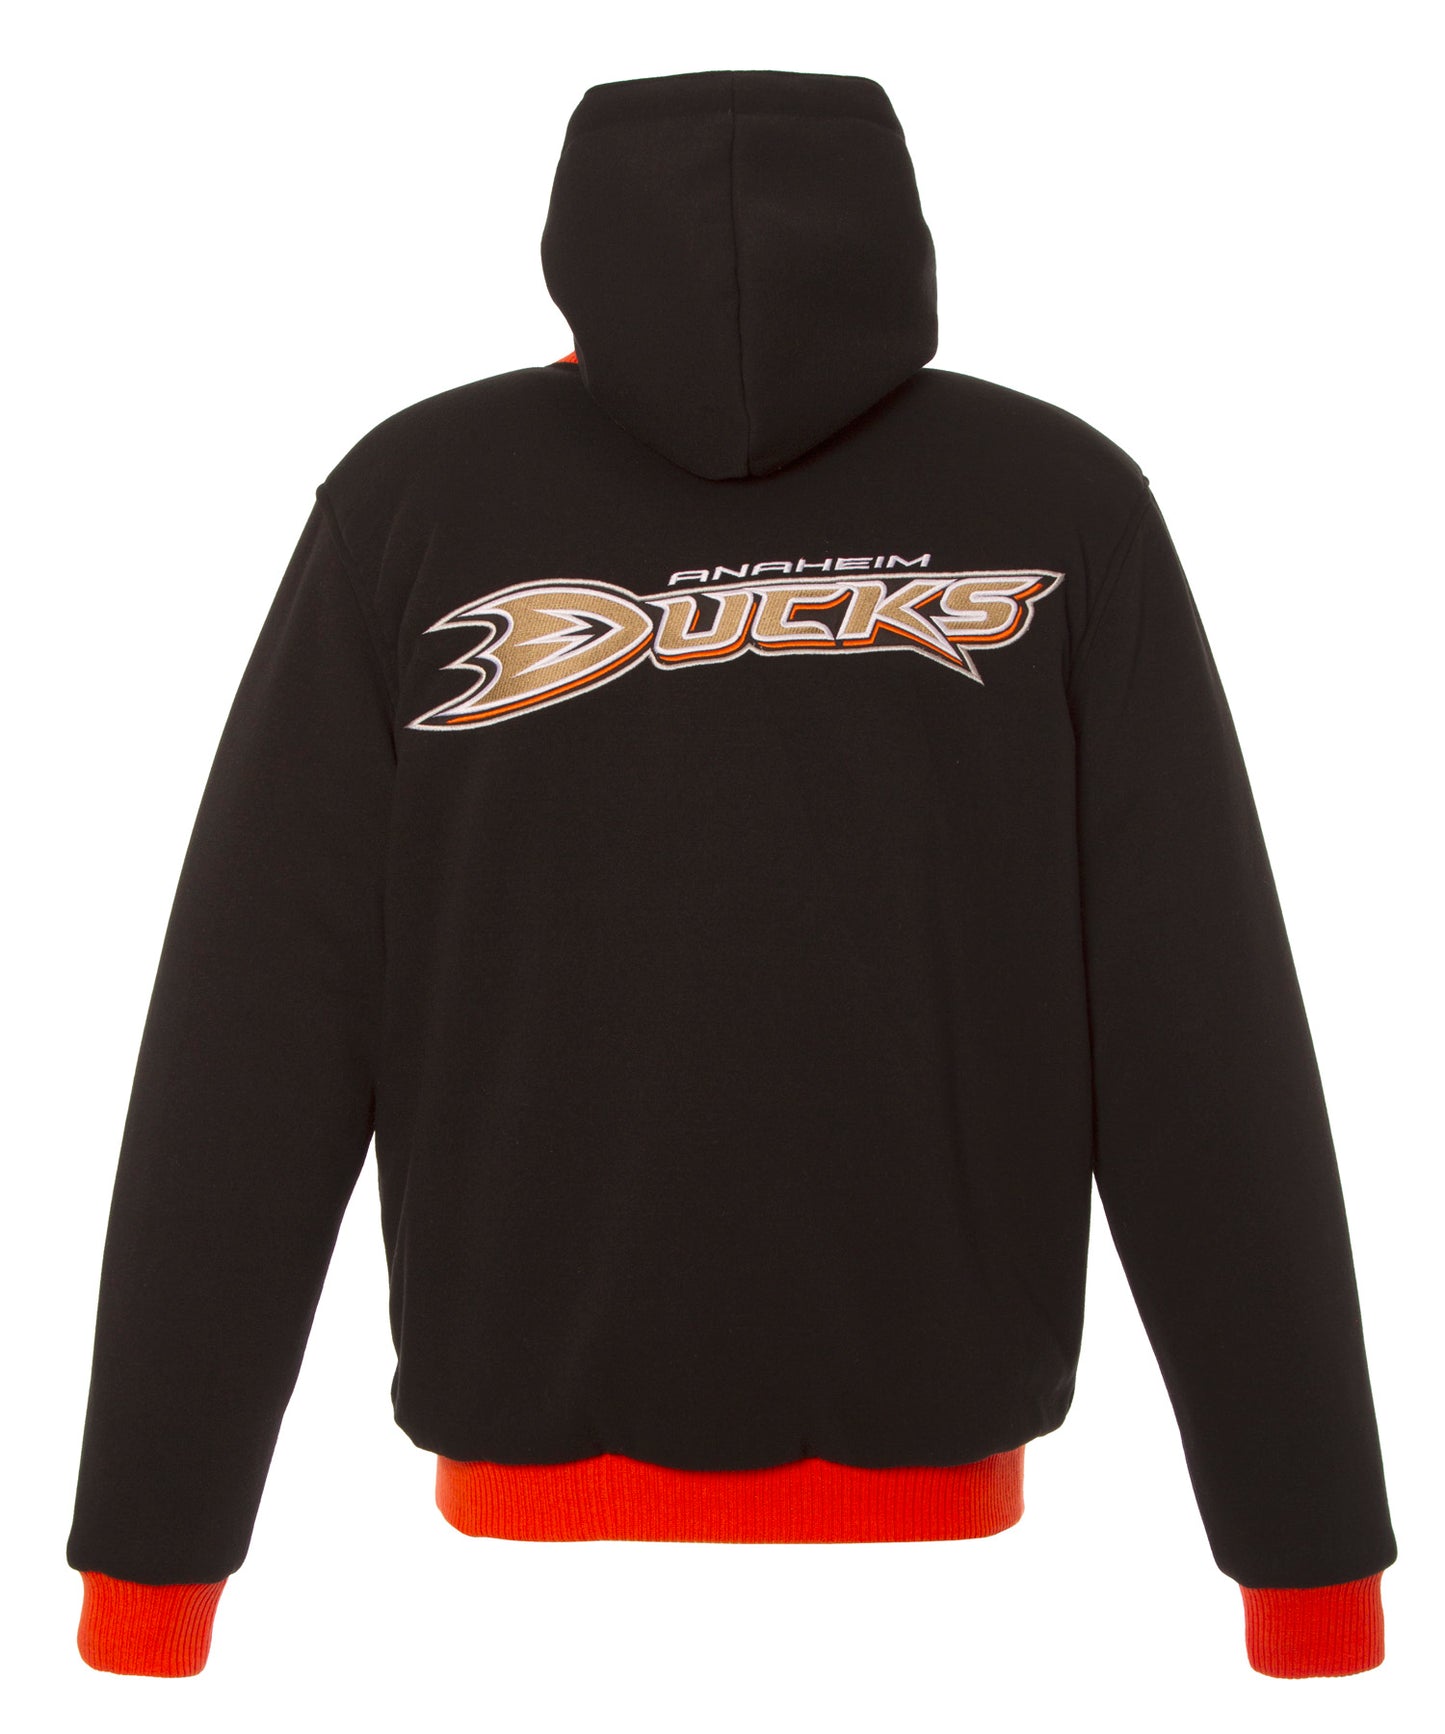 Anaheim Ducks Kid's Reversible Fleece Jacket